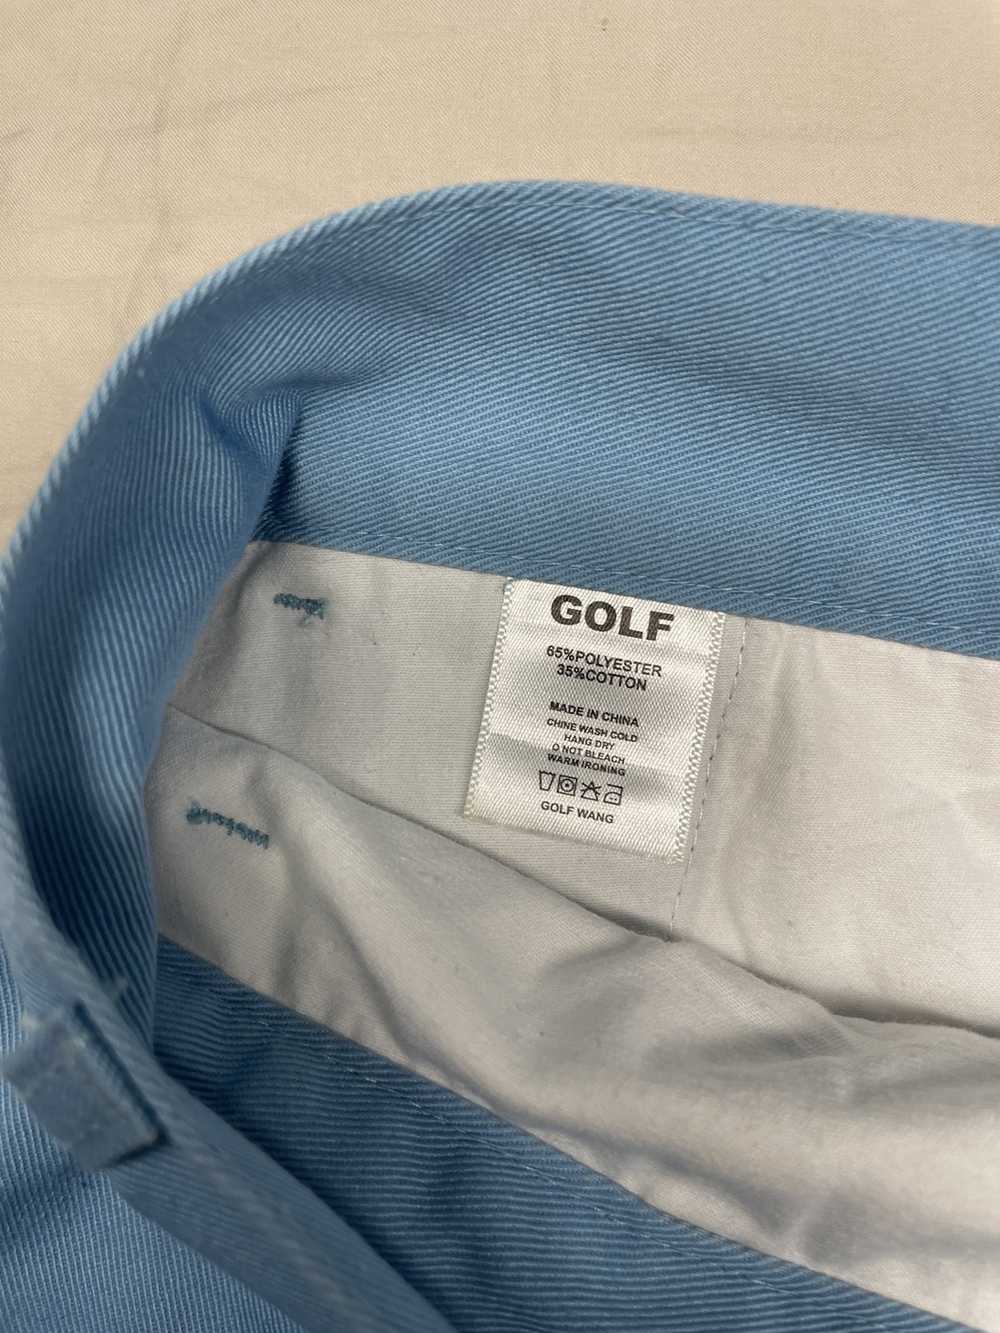 Golf Wang Golf “Baby Blue” Shorts - image 2